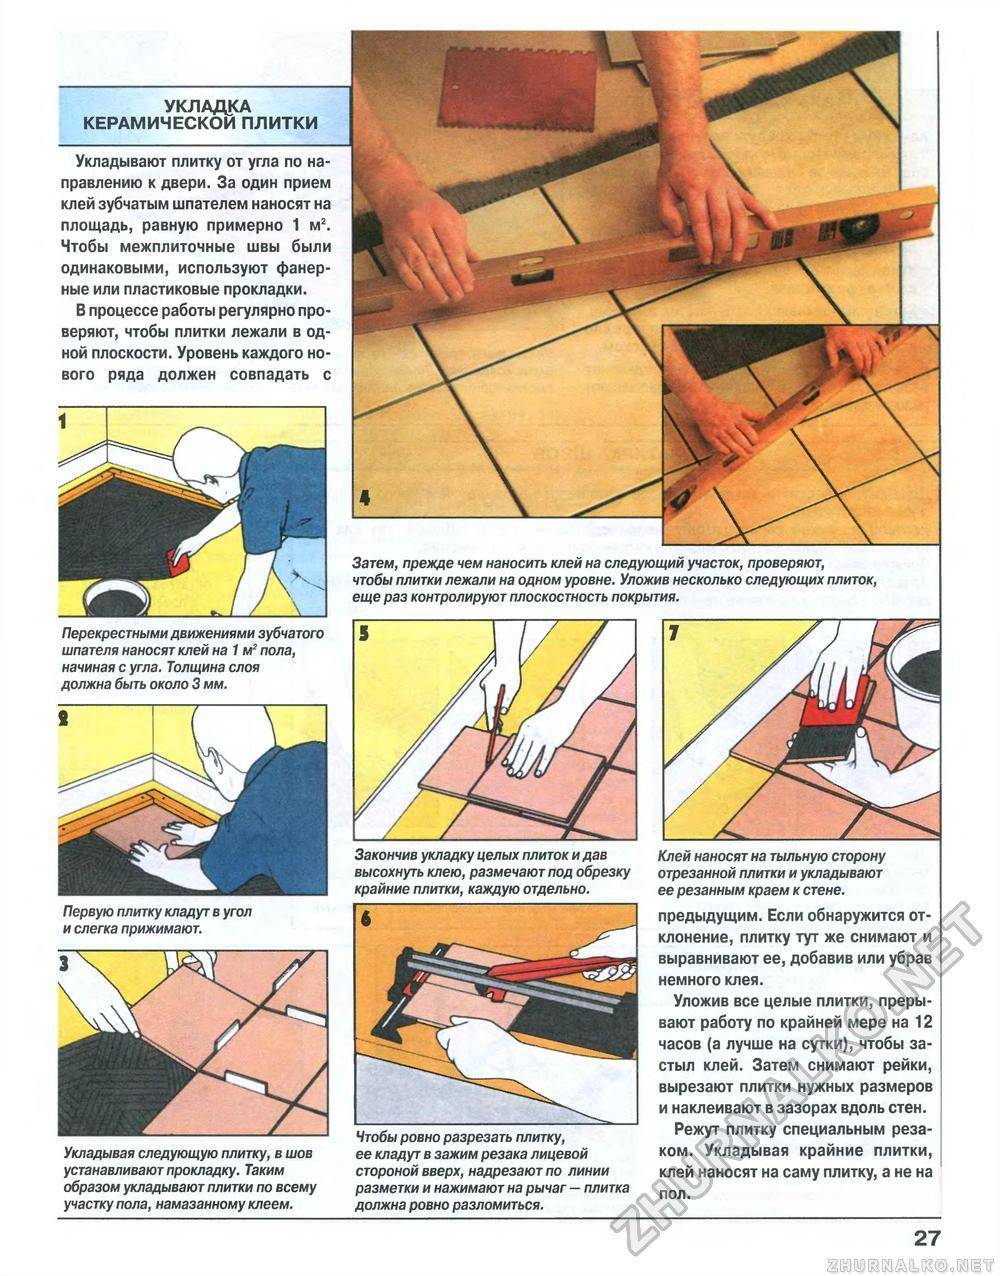 Укладка керамогранита на пол своими руками: подробные инструкции видео, под дерево, без швов,с рисунком, технология